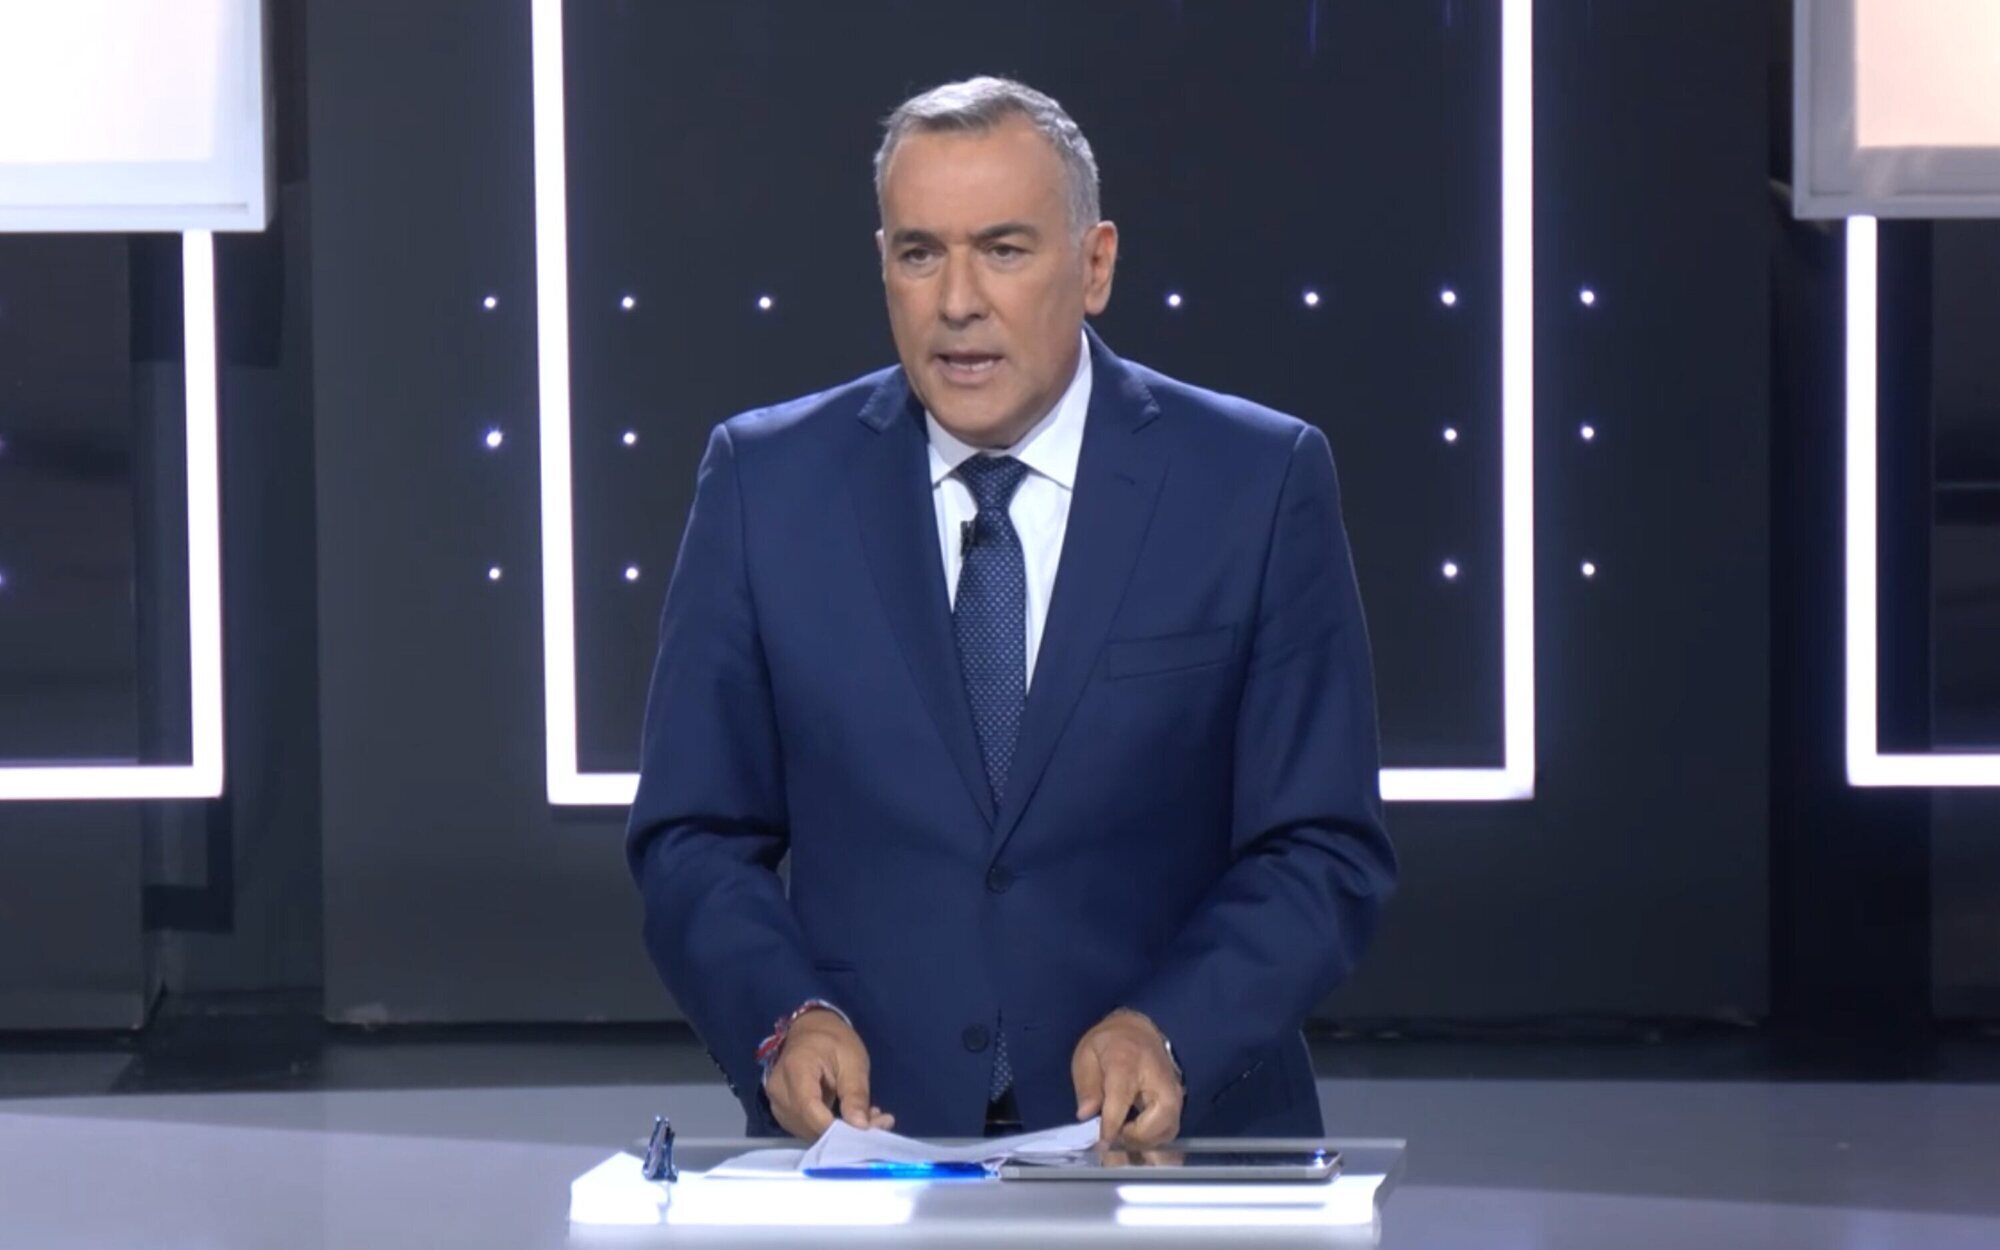 Xabier Fortes lamenta la ausencia de Feijóo en el debate de TVE: "Nos hubiera gustado dar todas las opiniones"